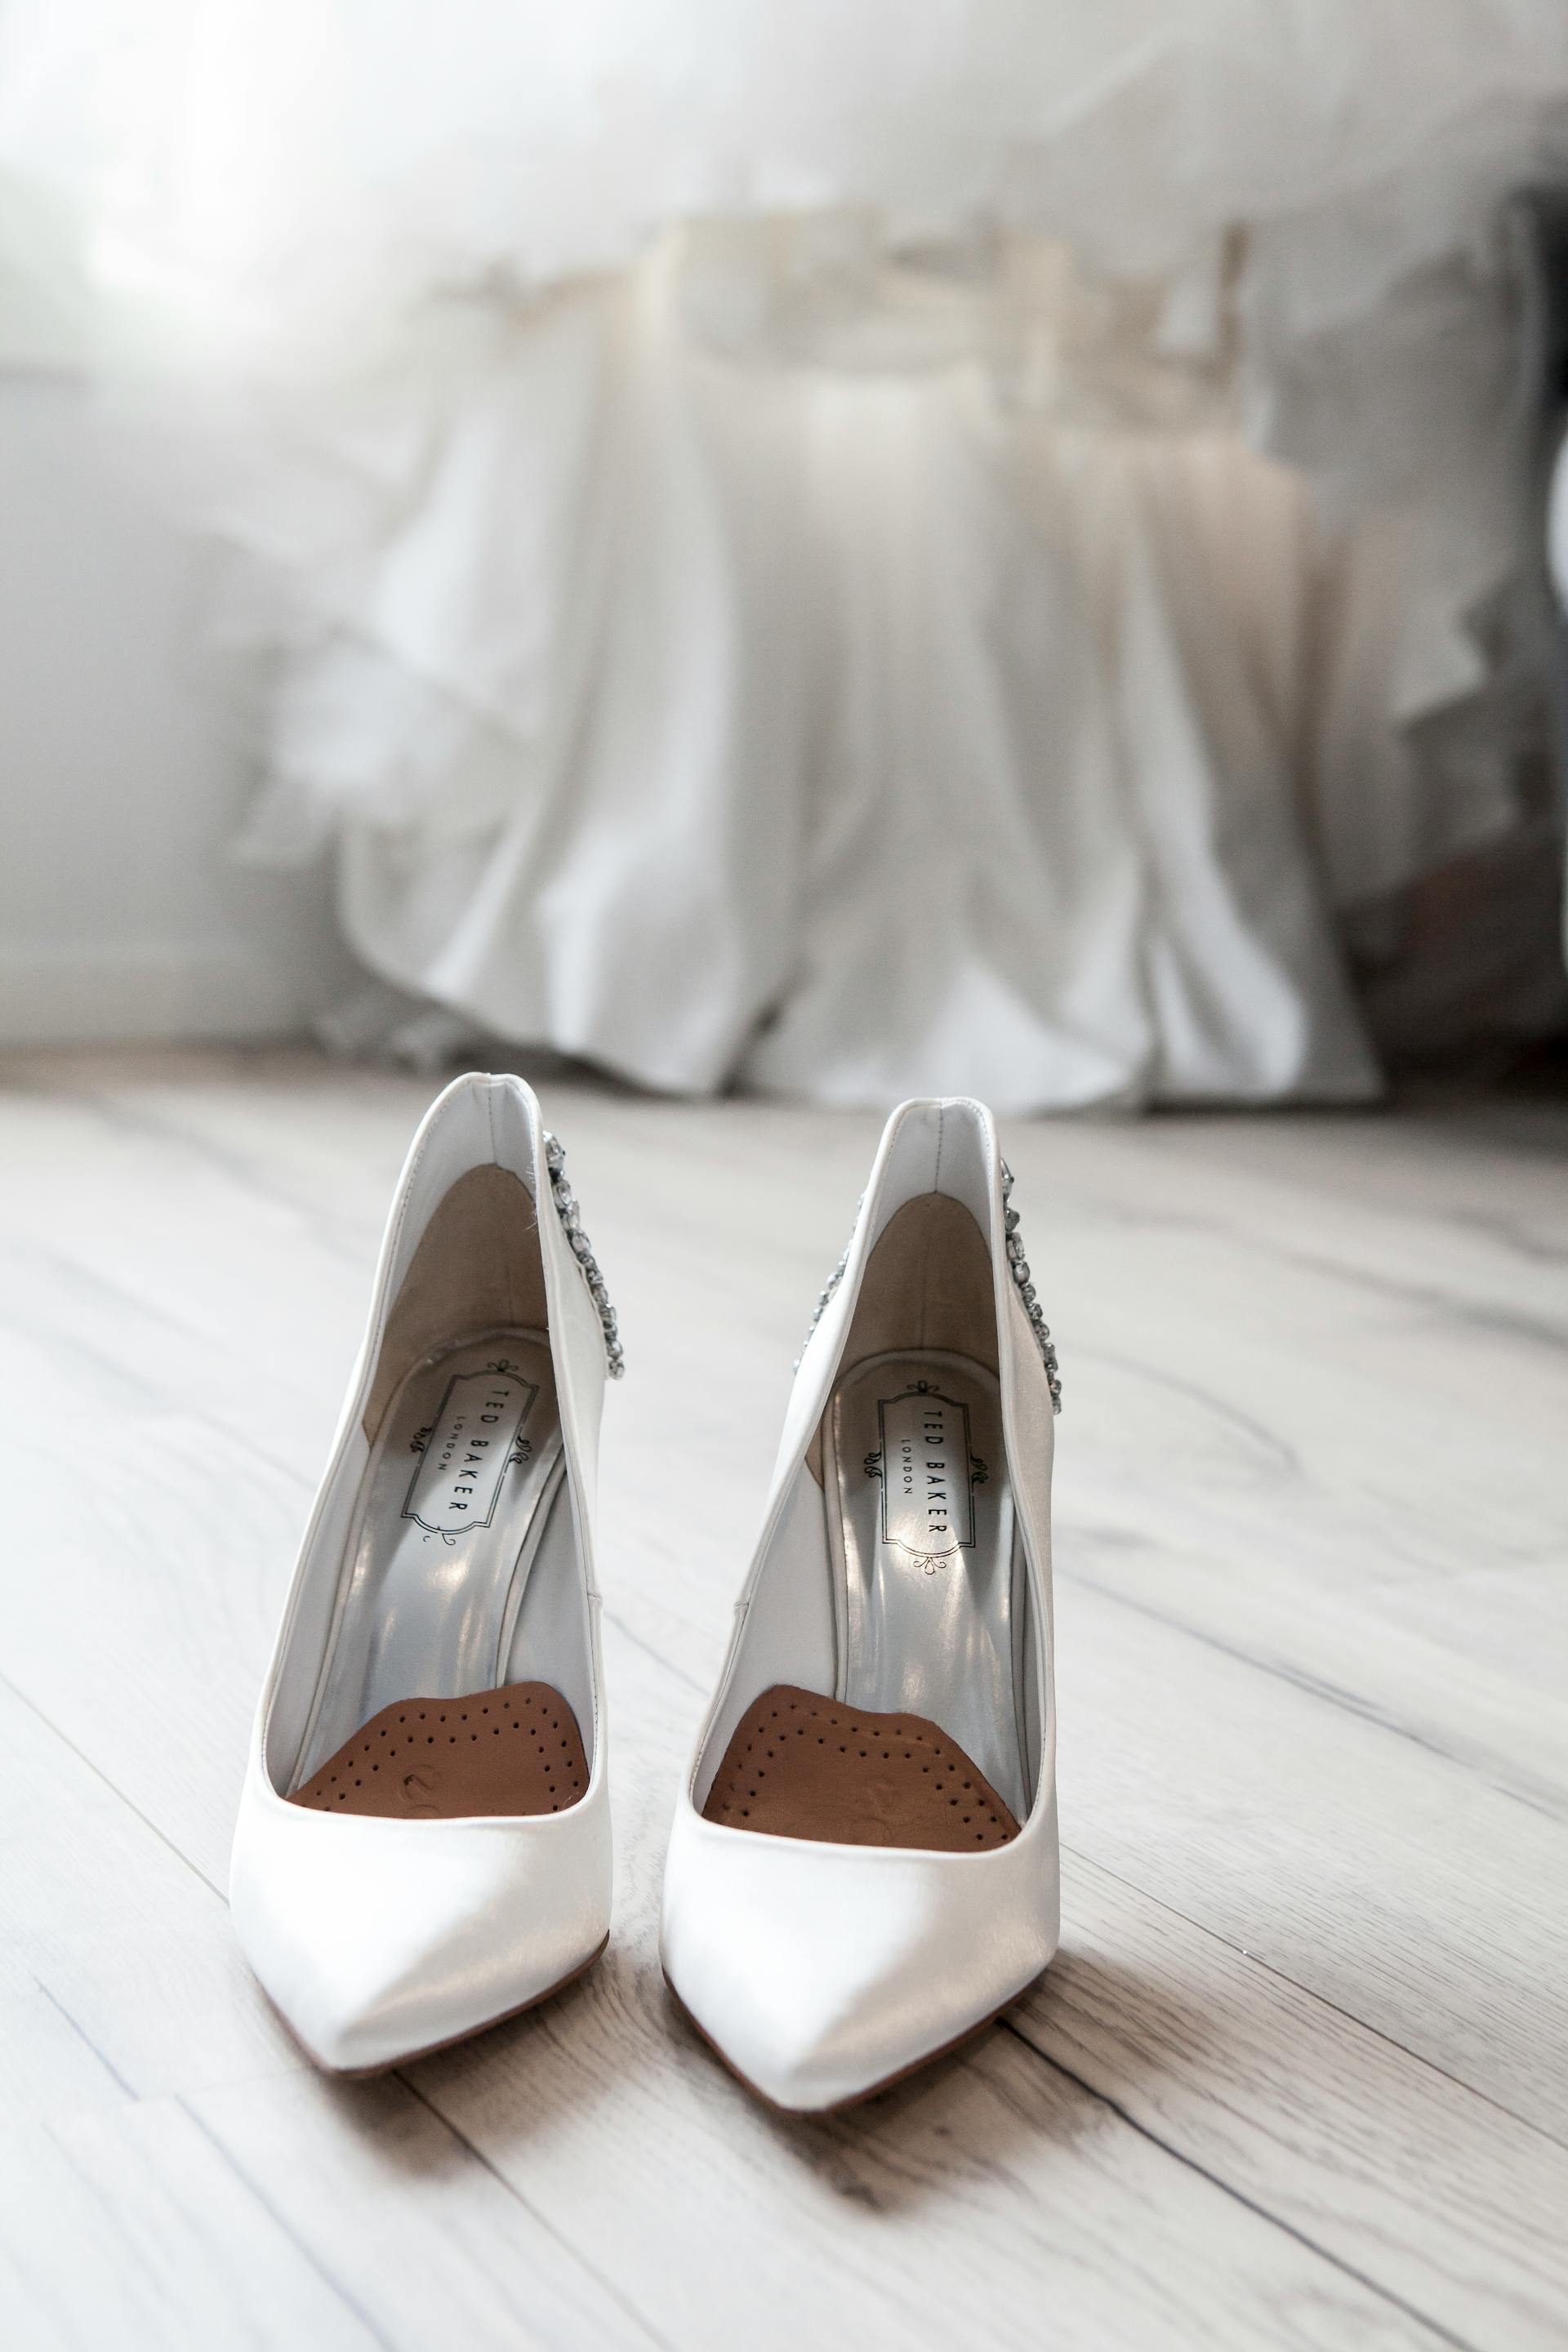 Zapatos de novia blancos | Fuente: Pexels